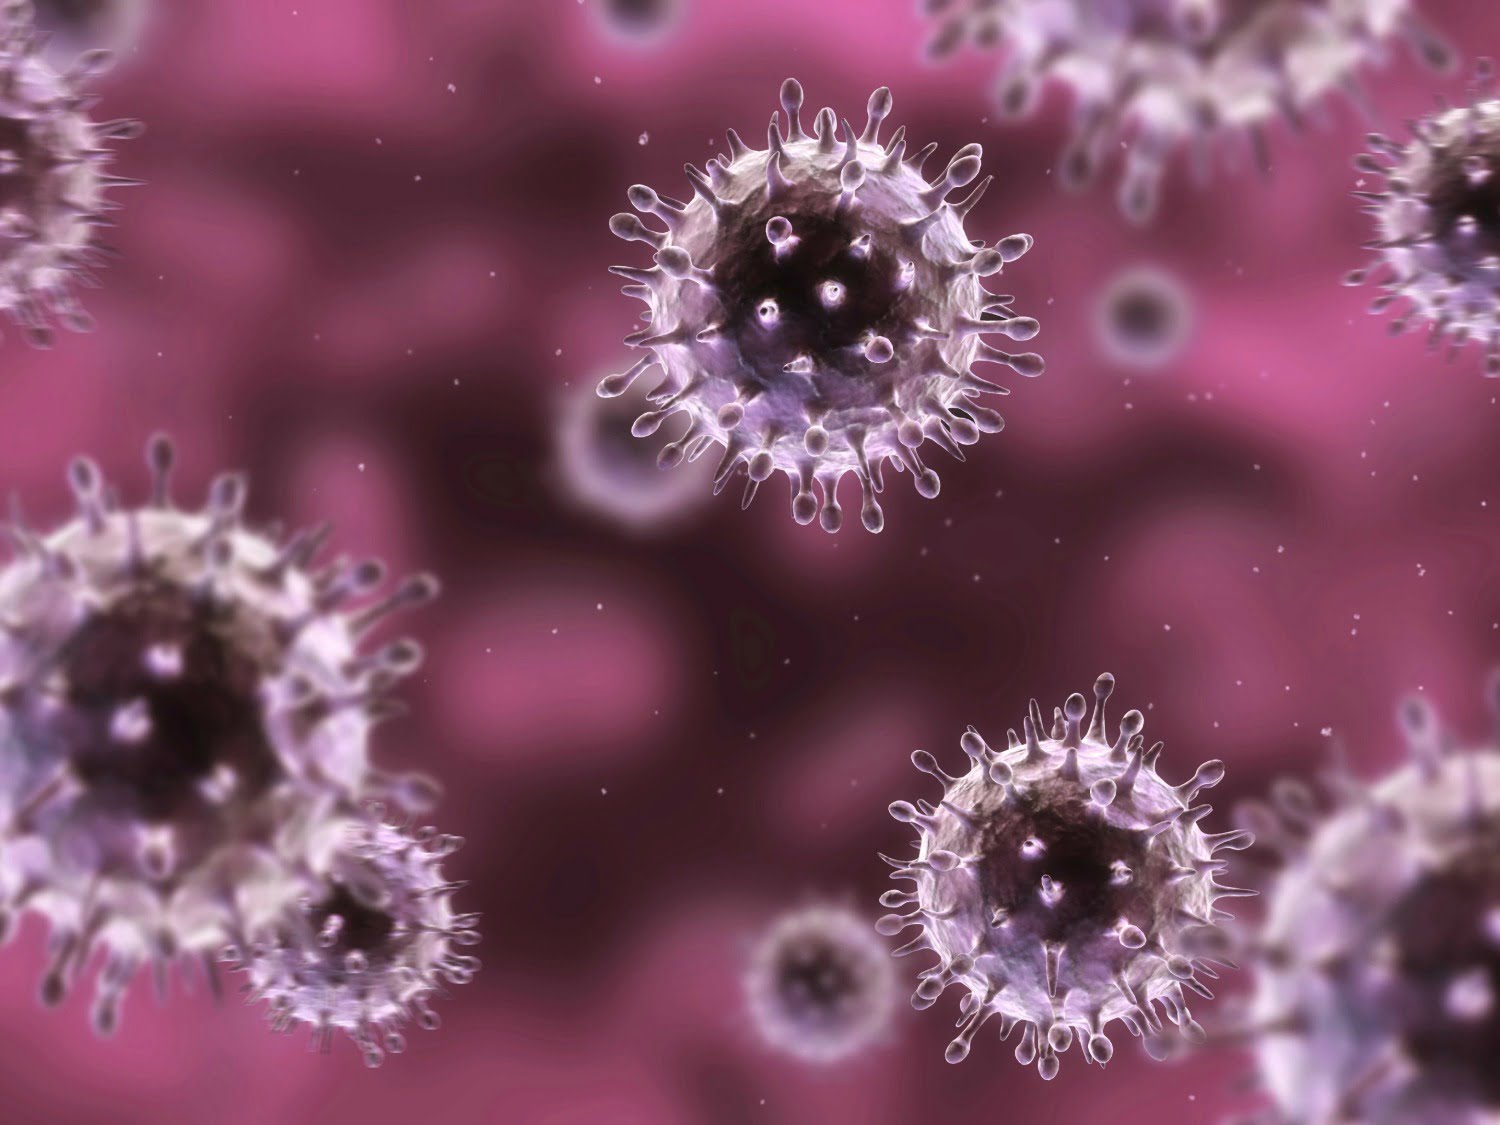 flu virus in pink